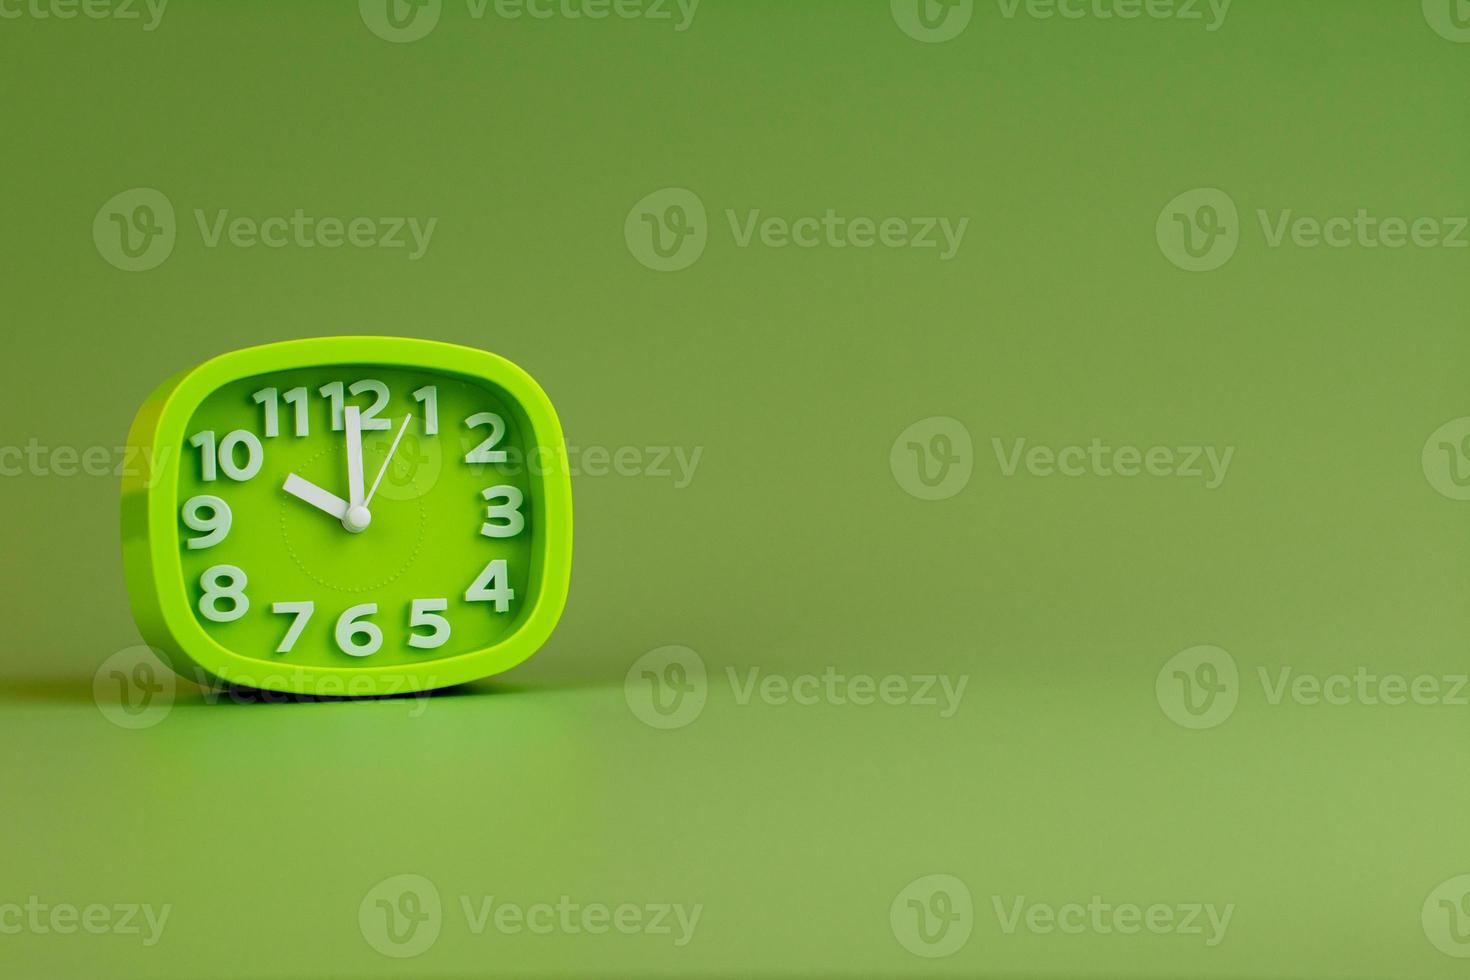 despertador em fundo verde, conceito de tempo, foto do relógio